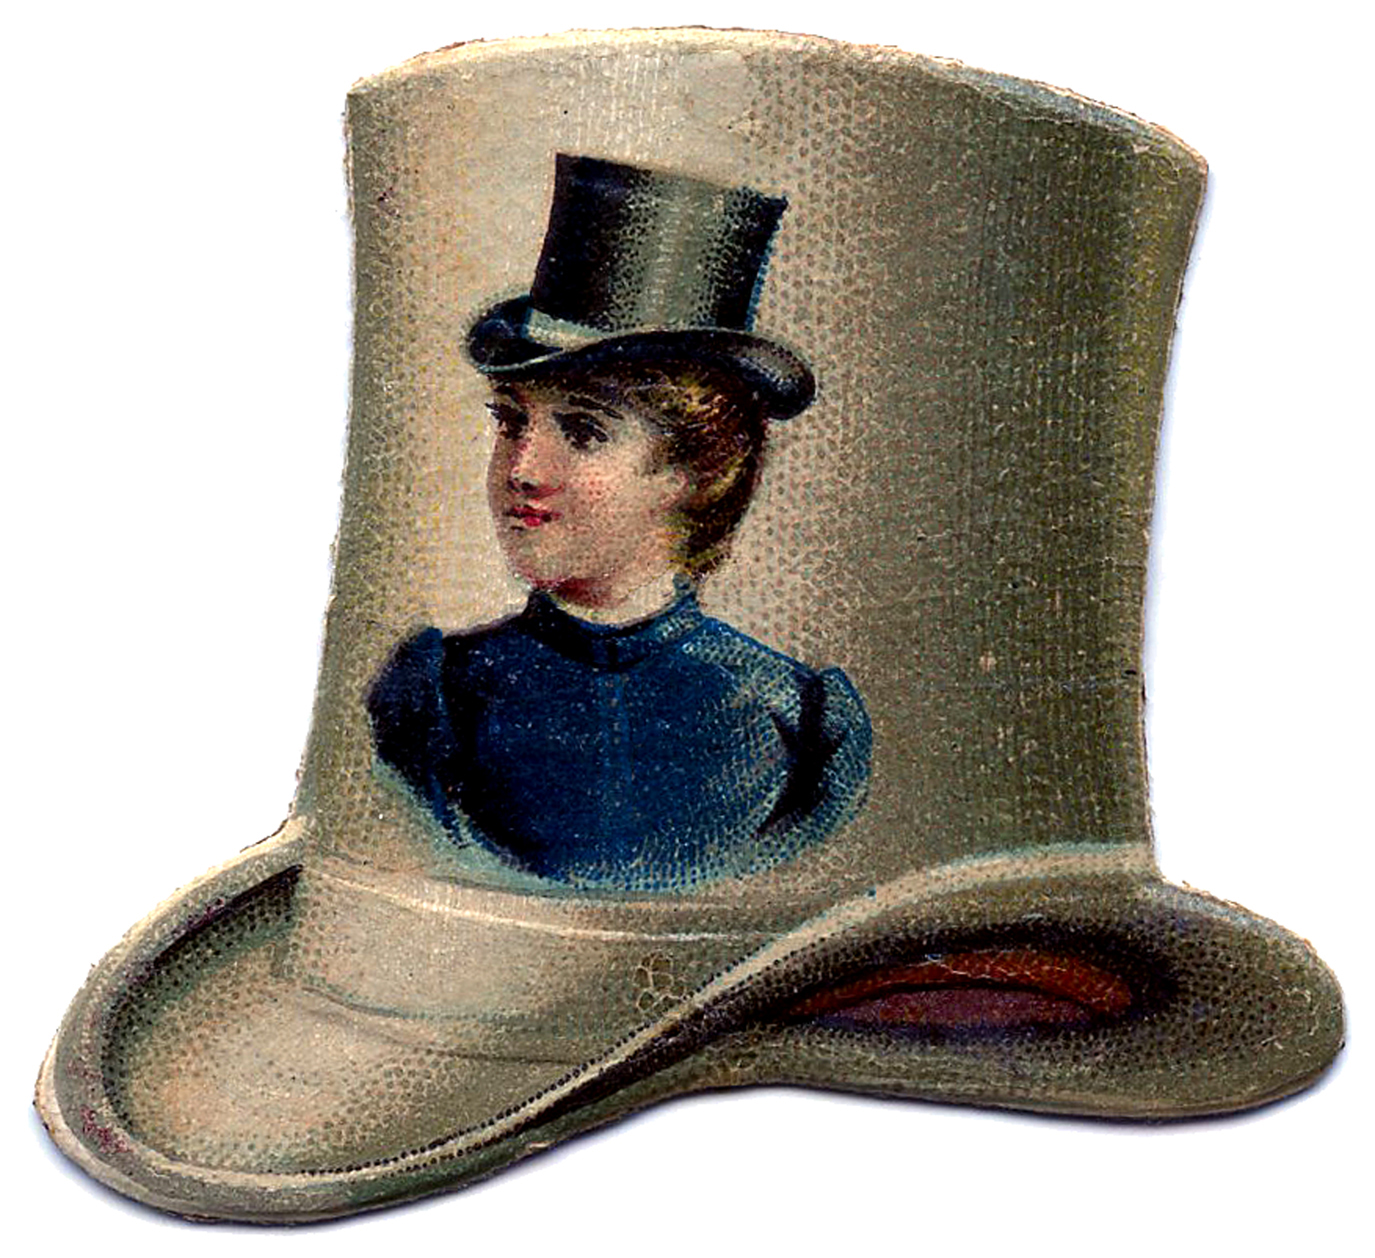 Шляпа поэта. Боливар шляпа 19 век. Боливар шляпа Пушкин. Боливар это широкополая шляпа. Шляпа a la Bolivar.